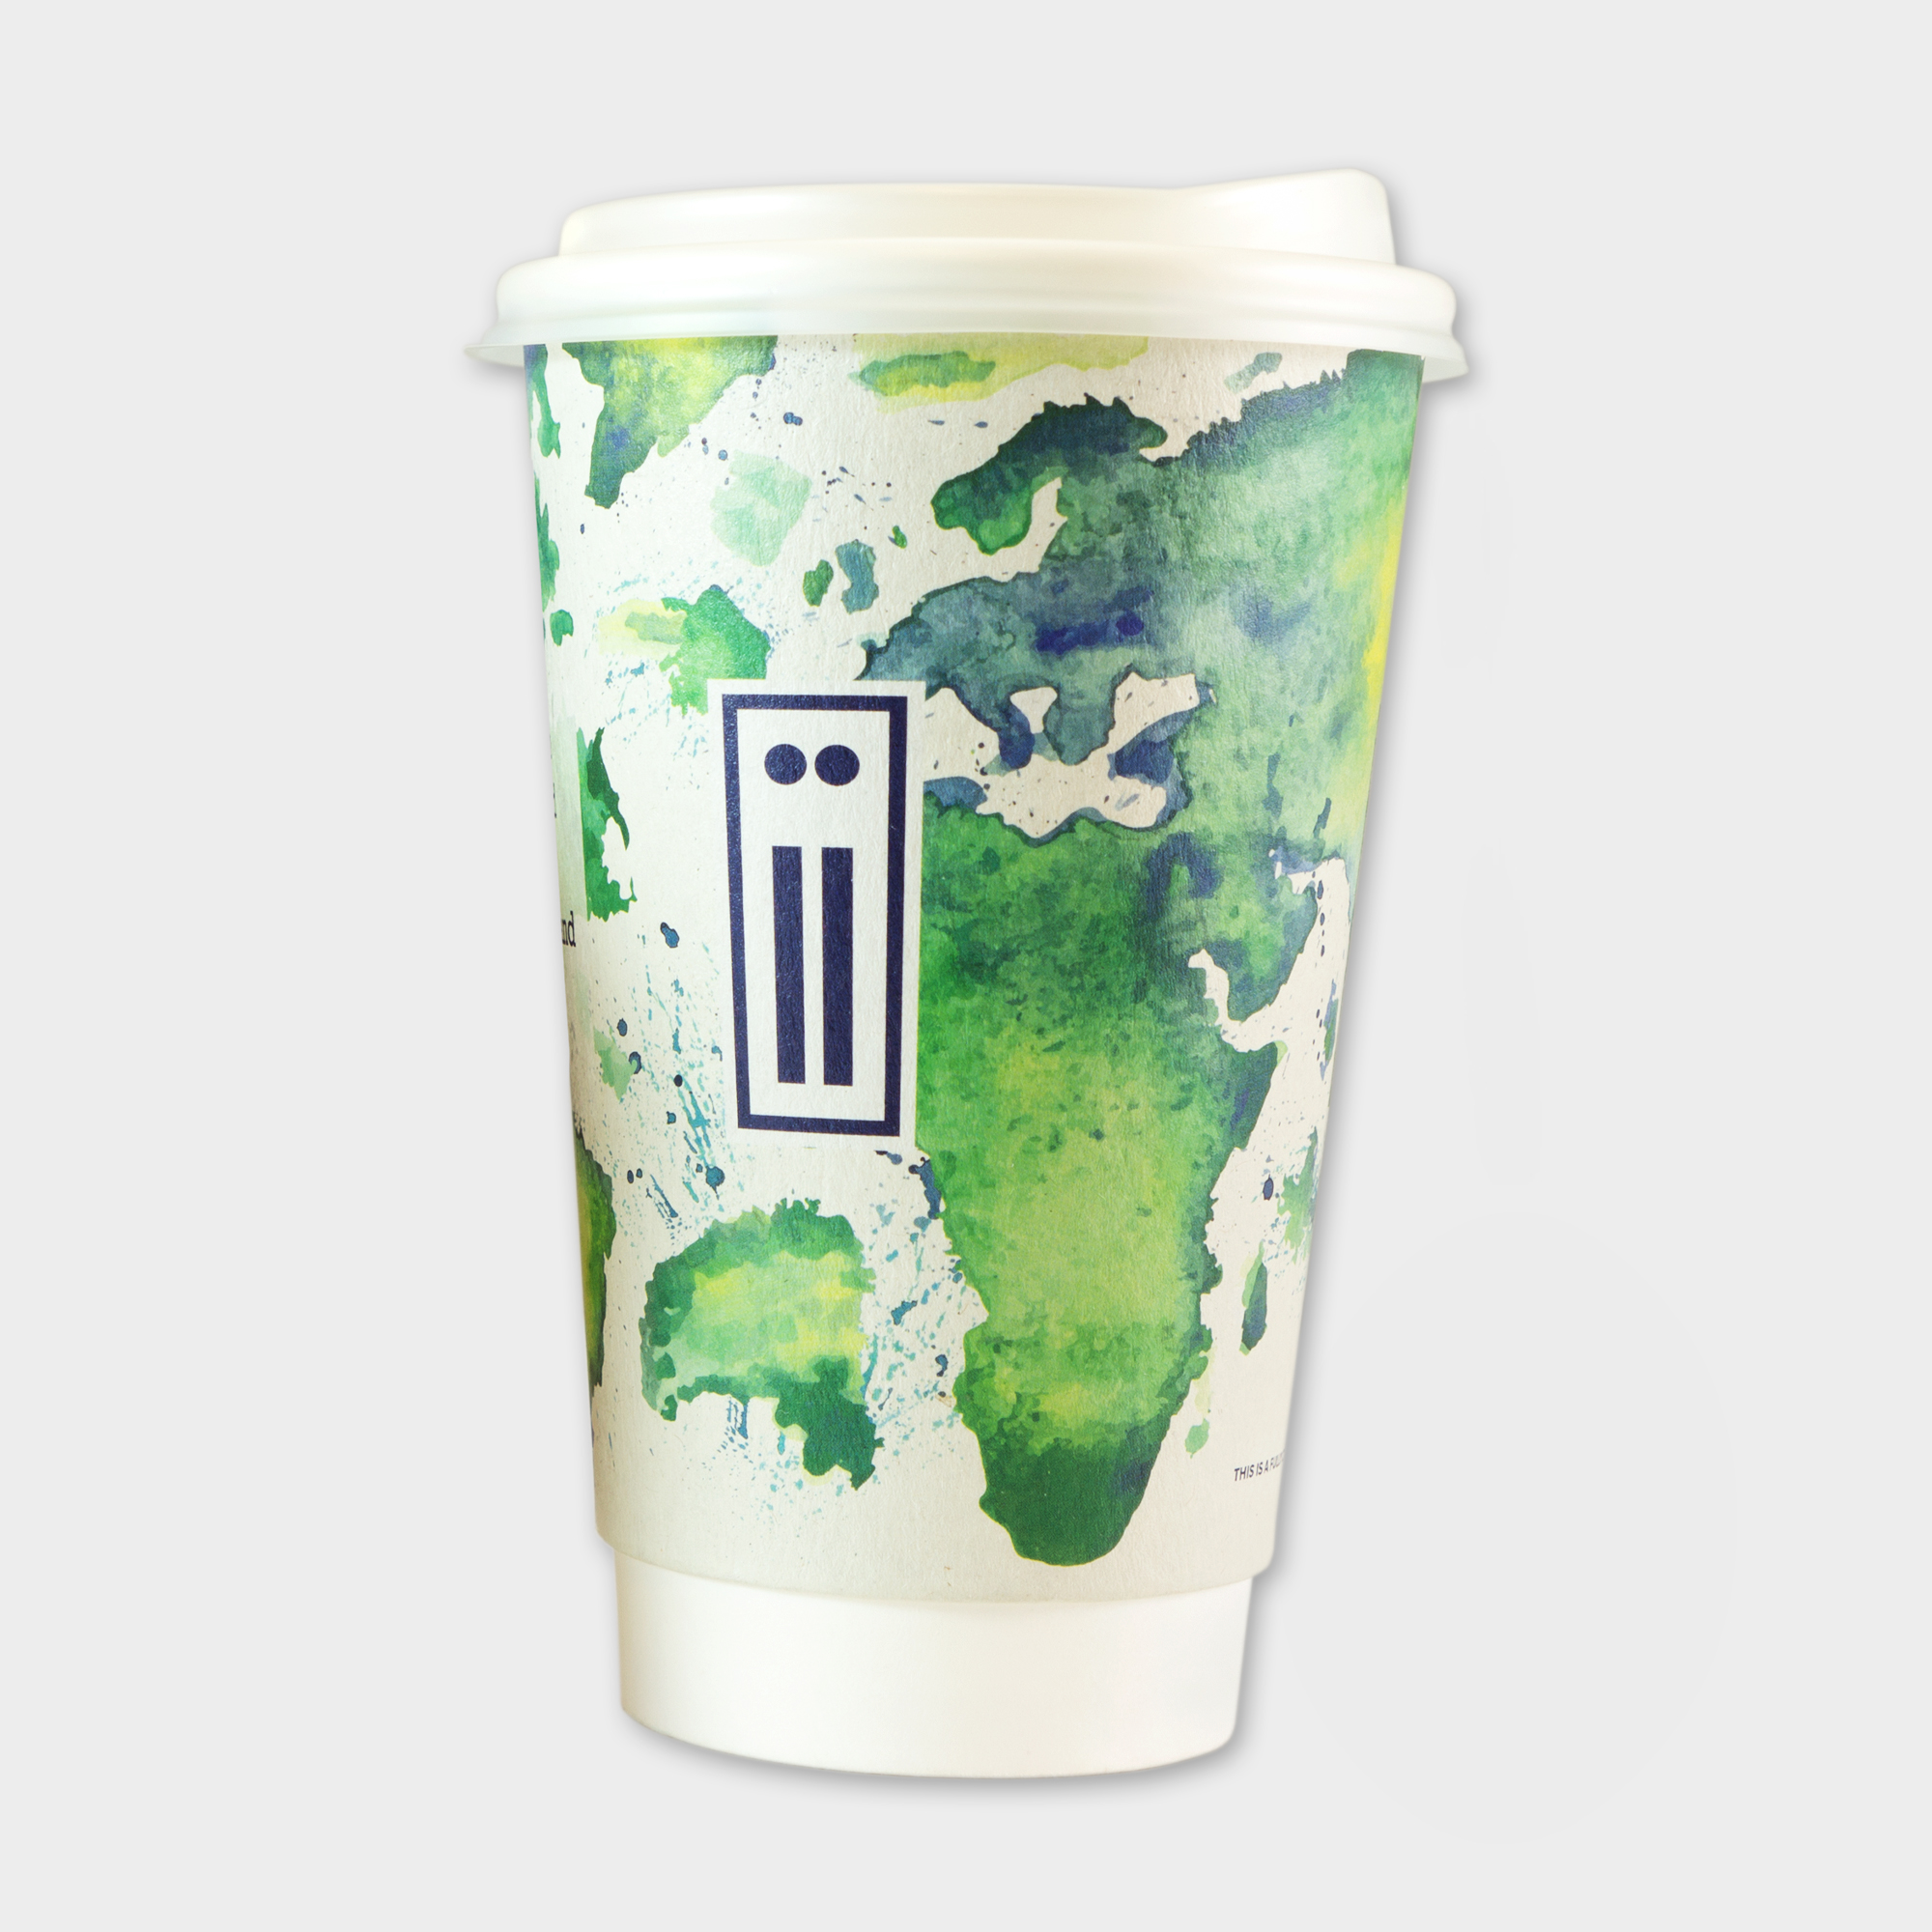 Unsere Green & Good To-Go Cups aus recyceltem Papier. Erhältlich in 3 Größen.